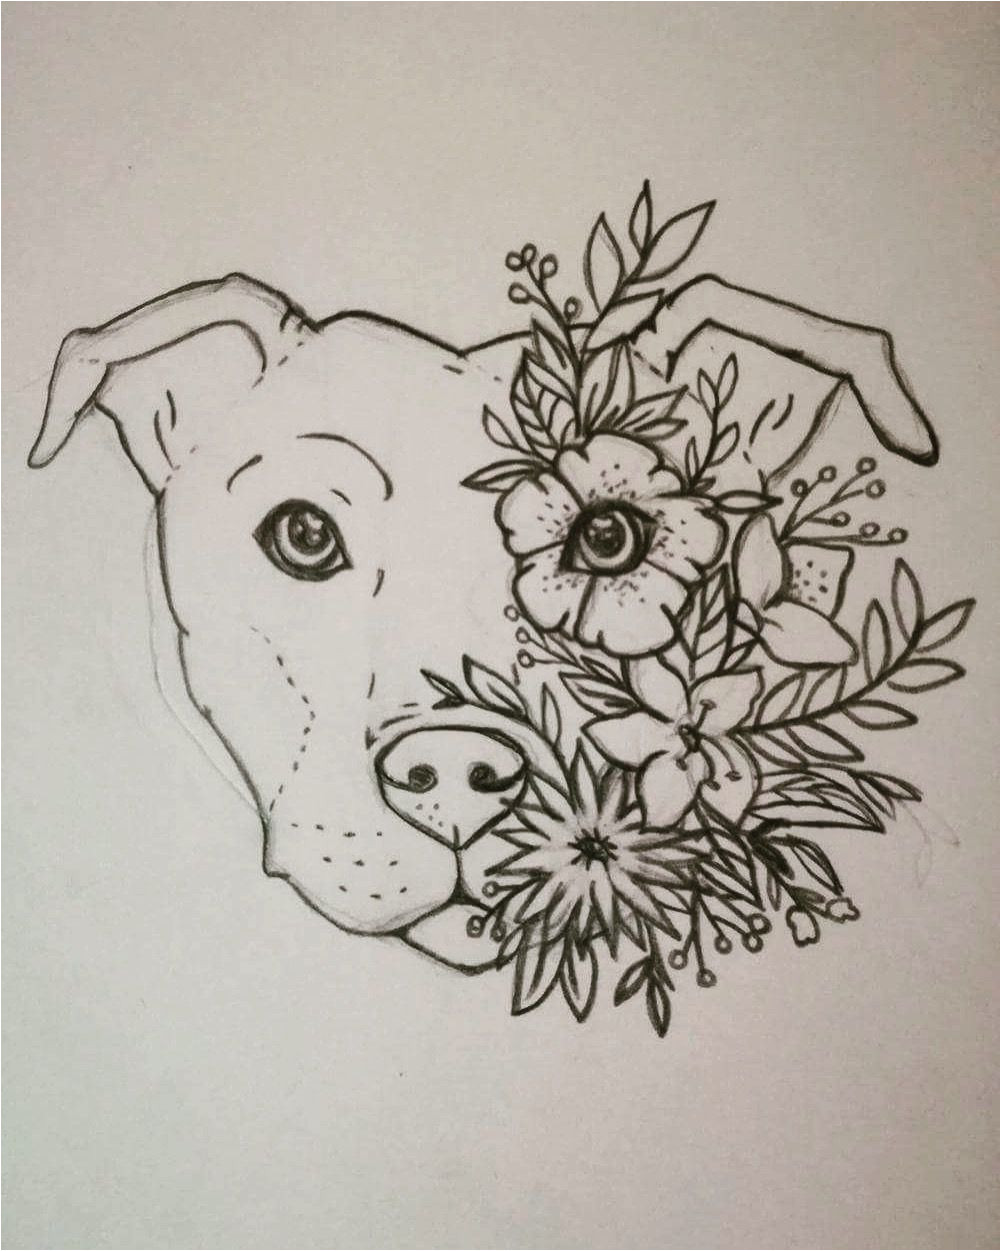 staffy tattoo staffordshire bull terrier floral flower tattoo